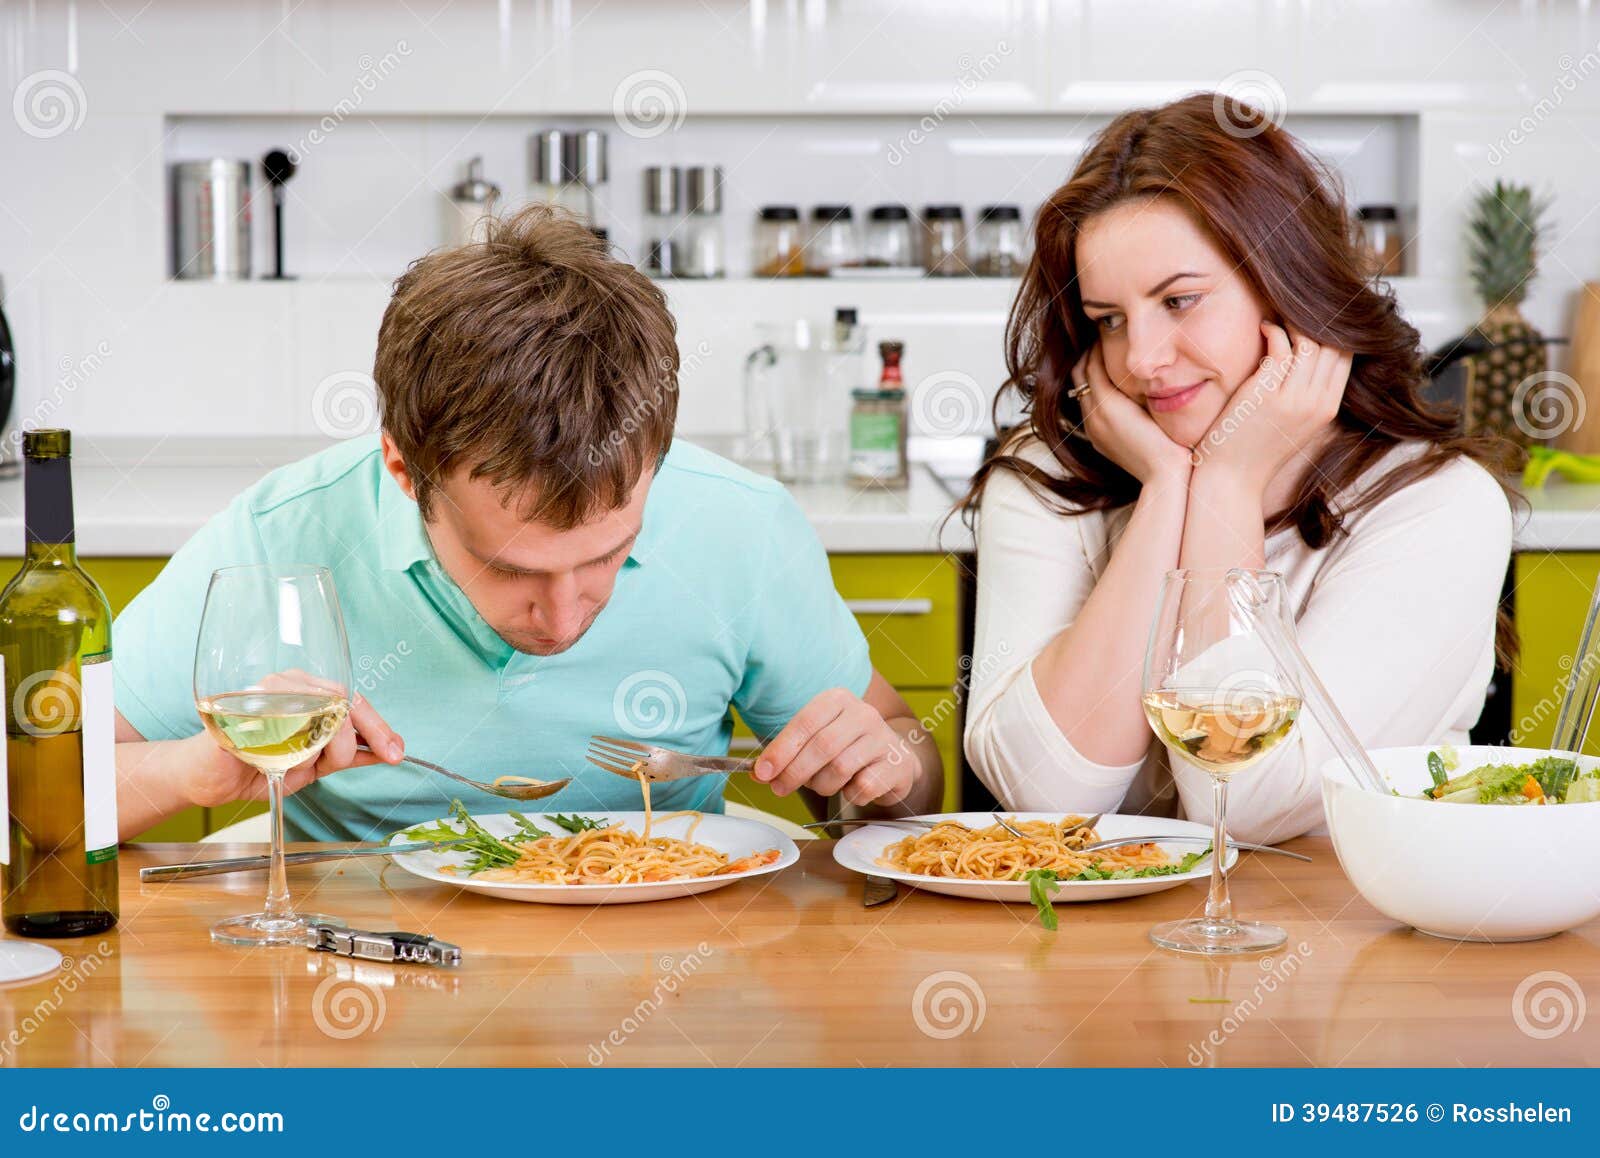 В доме появилась женщина. Мужчина и женщина ужинают. Мужчина и женщина завтракают. Супруги за столом. Муж ужинает на кухне.